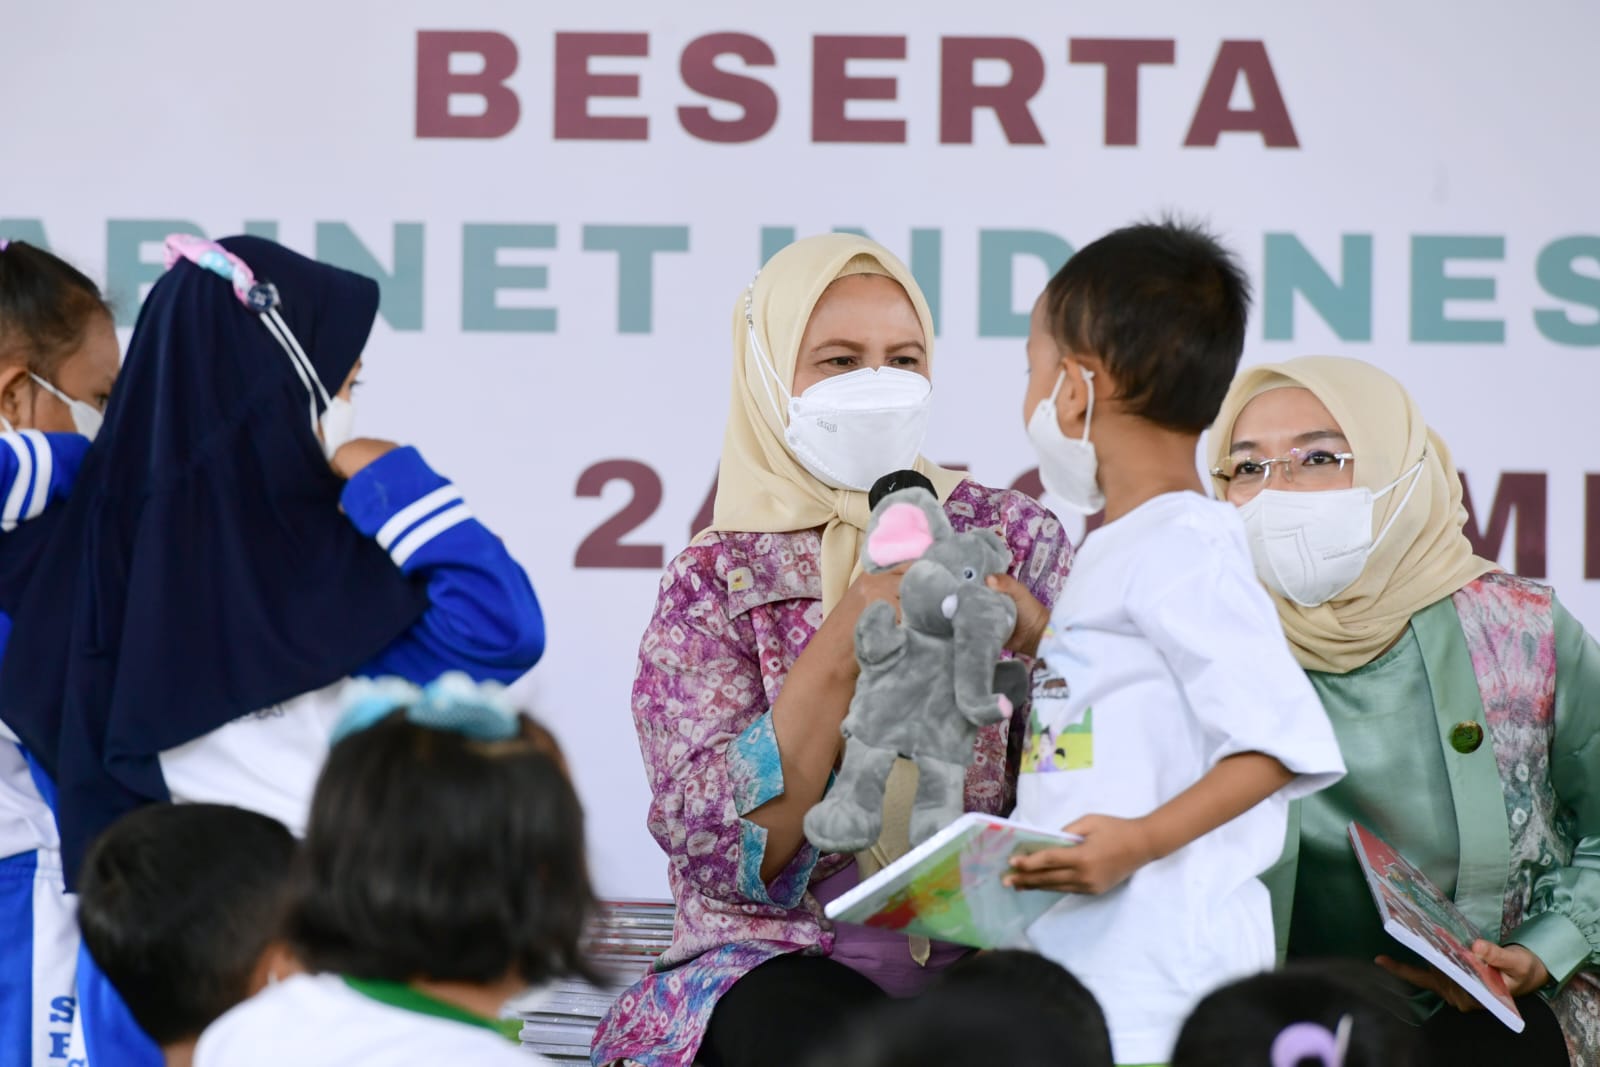 Ibu Negara Iriana Joko Widodo Bermain dengan Anak PAUD di Palembang, Tebakan Hewan Diberi Bingkisan